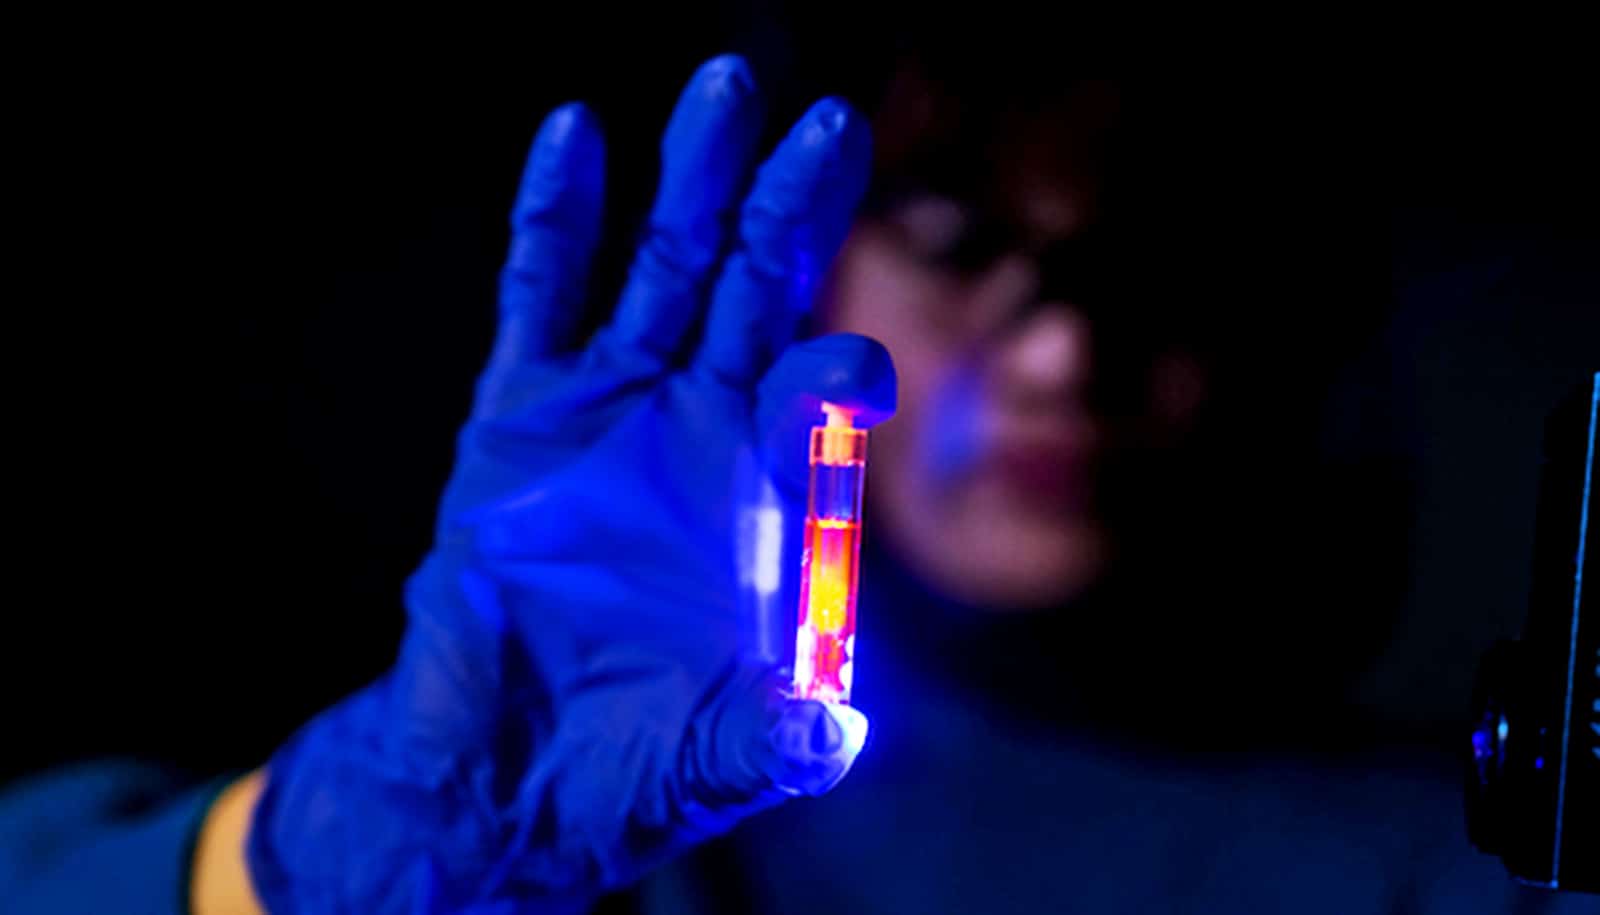 Ein Forscher mit blauen Handschuhen hält in einem dunklen Raum ein orange leuchtendes Fläschchen hoch.